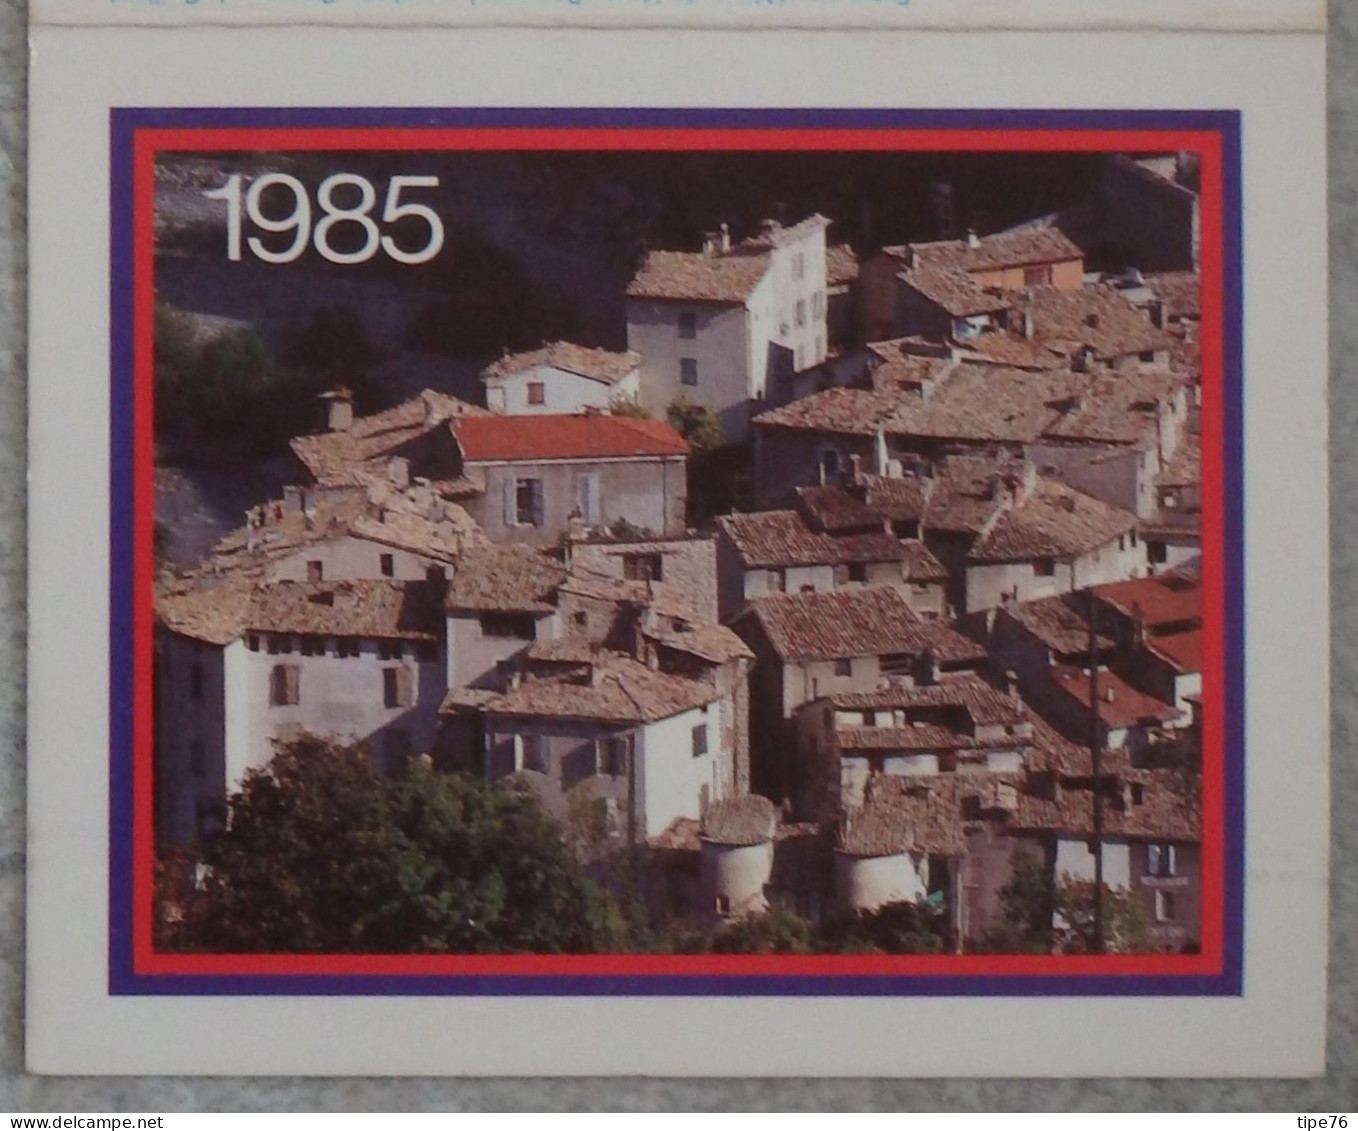 Petit Calendrier De Poche 1985 Entrevaux Alpes De Haute Provence - Centre Transfusion Sanguine Rennes Ille Et Vilaine - Petit Format : 1981-90